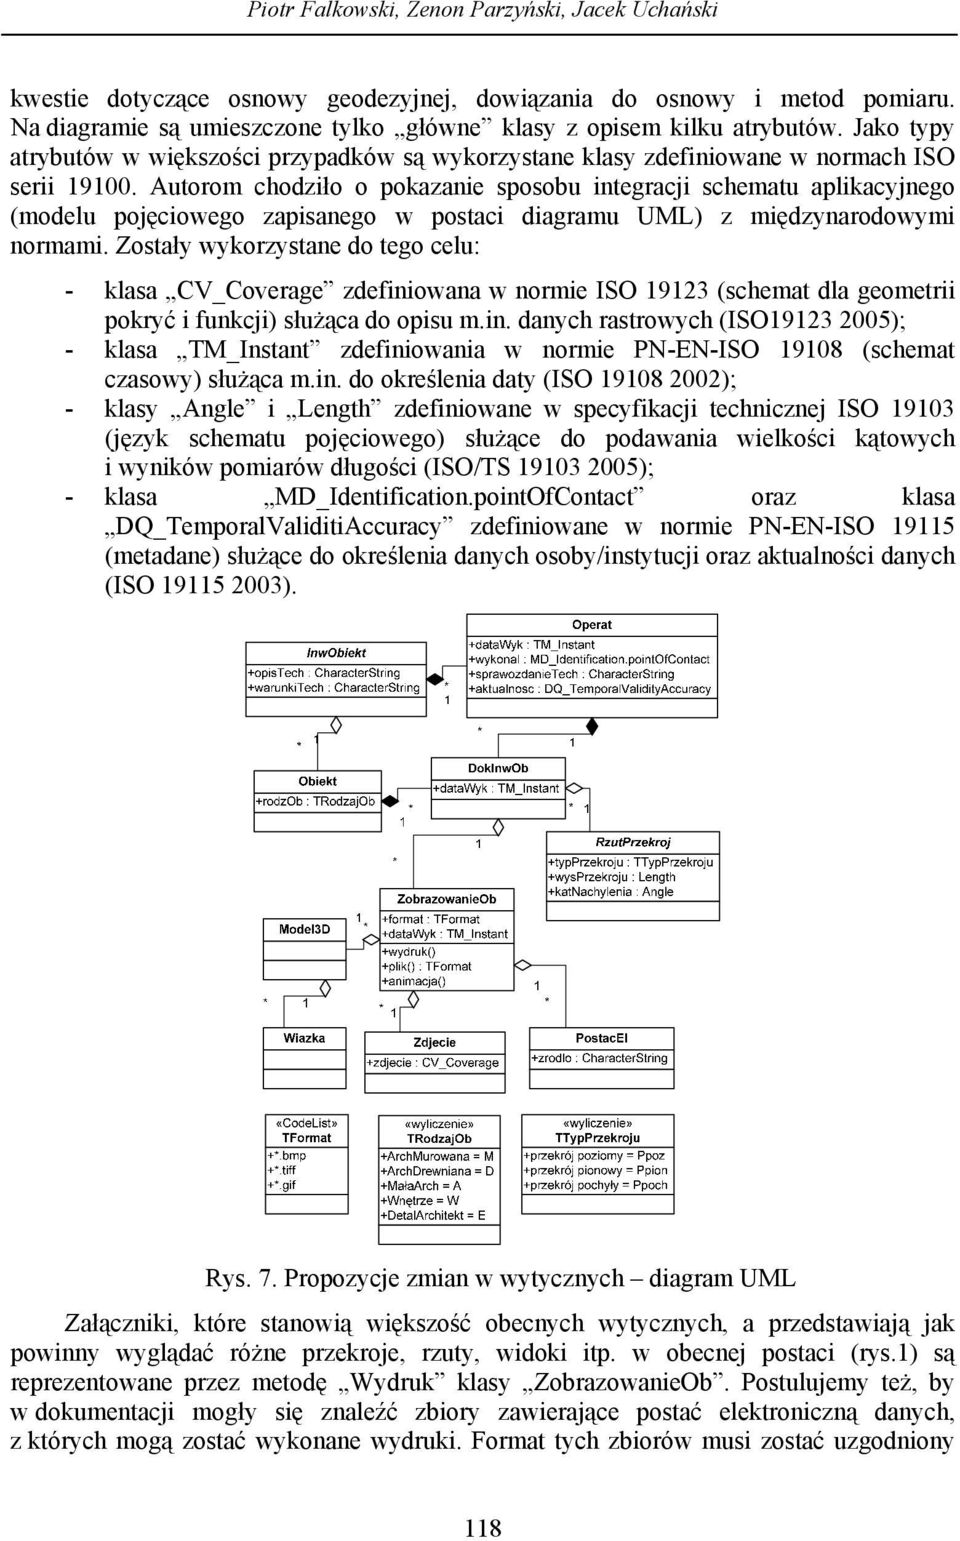 Autorom chodziło o pokazanie sposobu integracji schematu aplikacyjnego (modelu pojęciowego zapisanego w postaci diagramu UML) z międzynarodowymi normami.